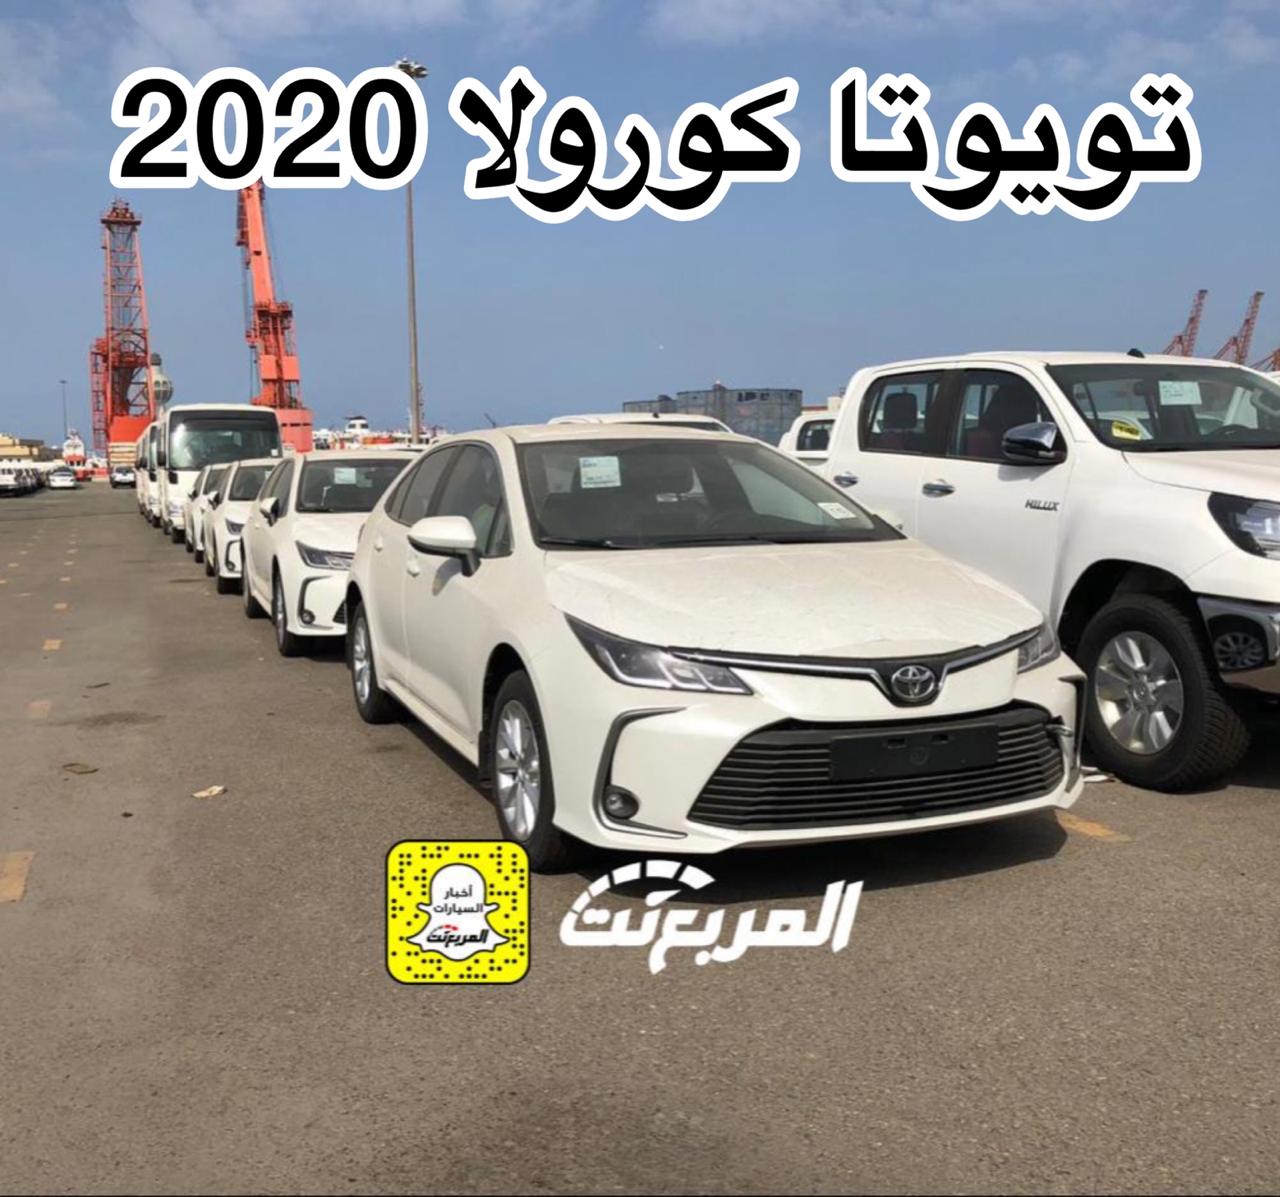 المربع نت “بالصور” وصول تويوتا كورولا 2020 الجديدة الى السعودية